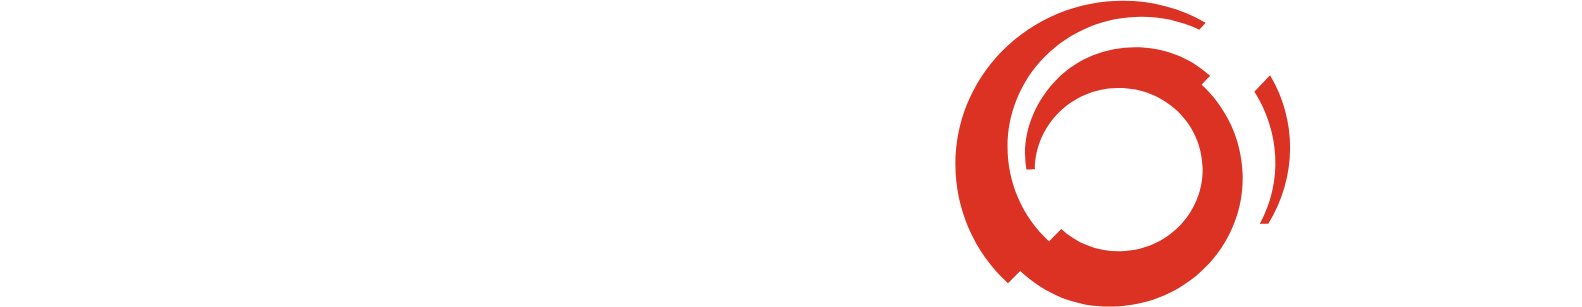 Alstom logo large for dark backgrounds (transparent PNG)